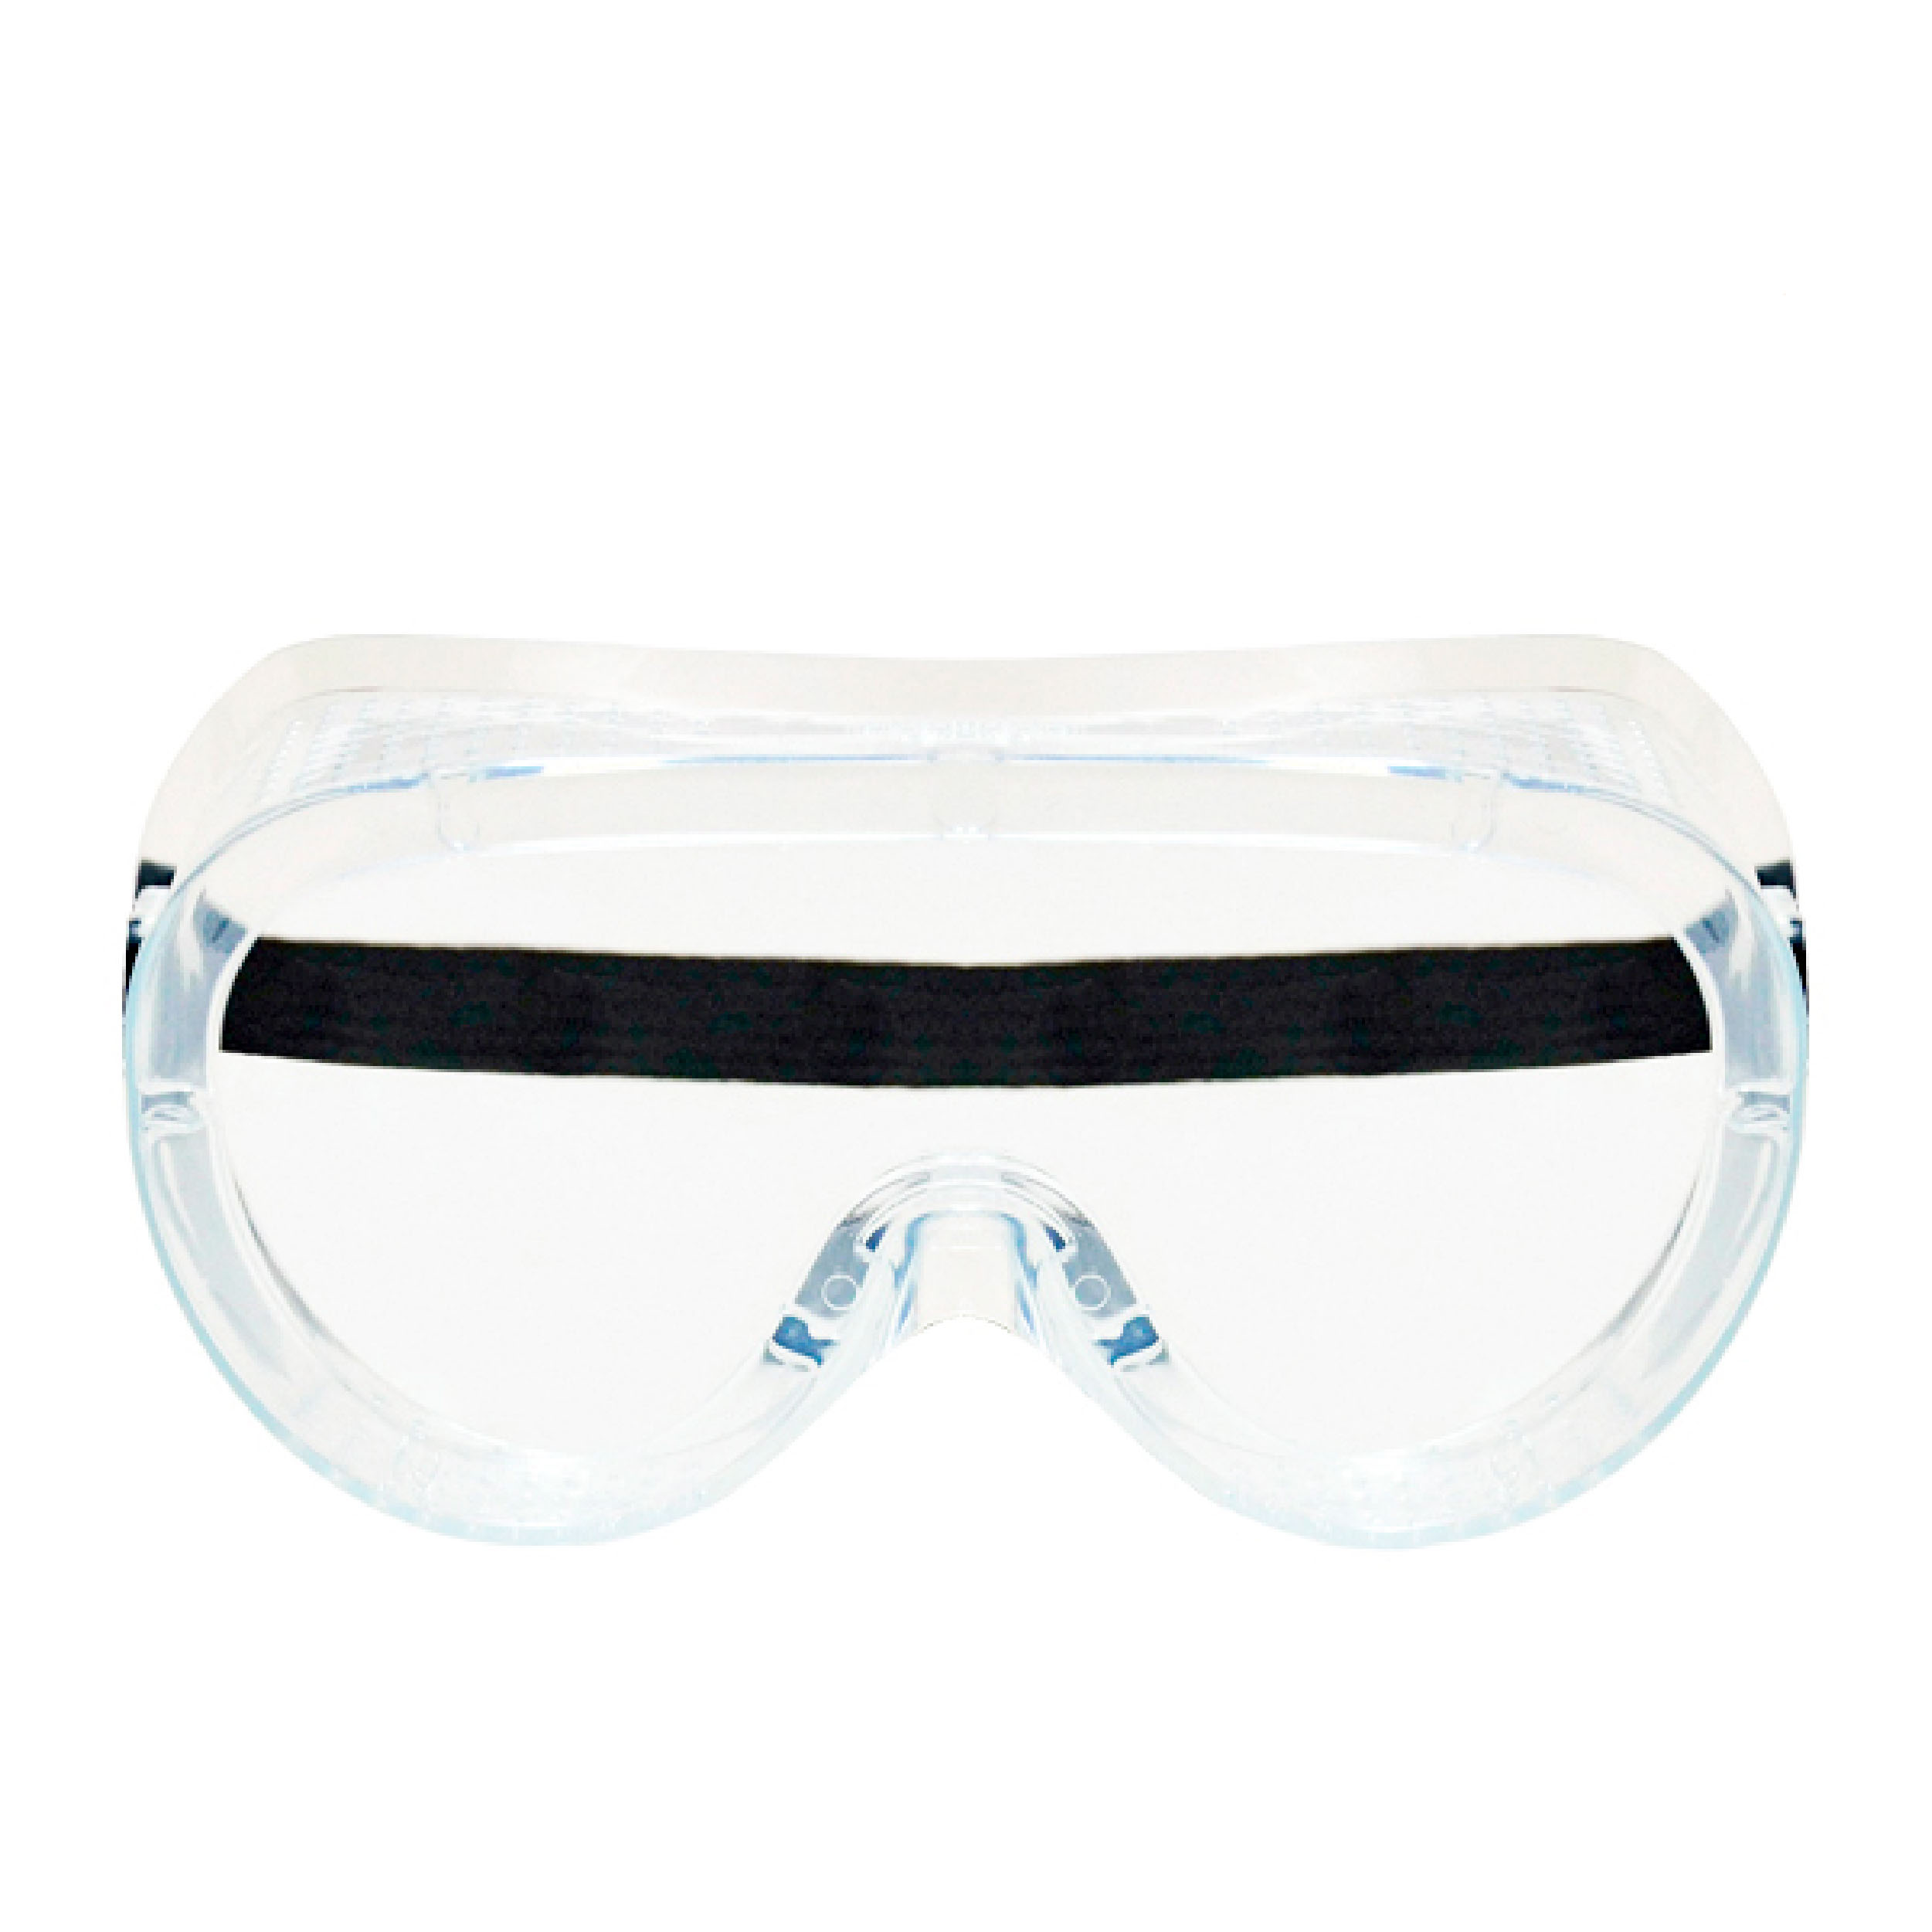 Goggle Beluga Policarbonato Antiempañante con Armazón Transparente y Ventilación Directa LAMIRA Gris 4011-VD AF … - 0